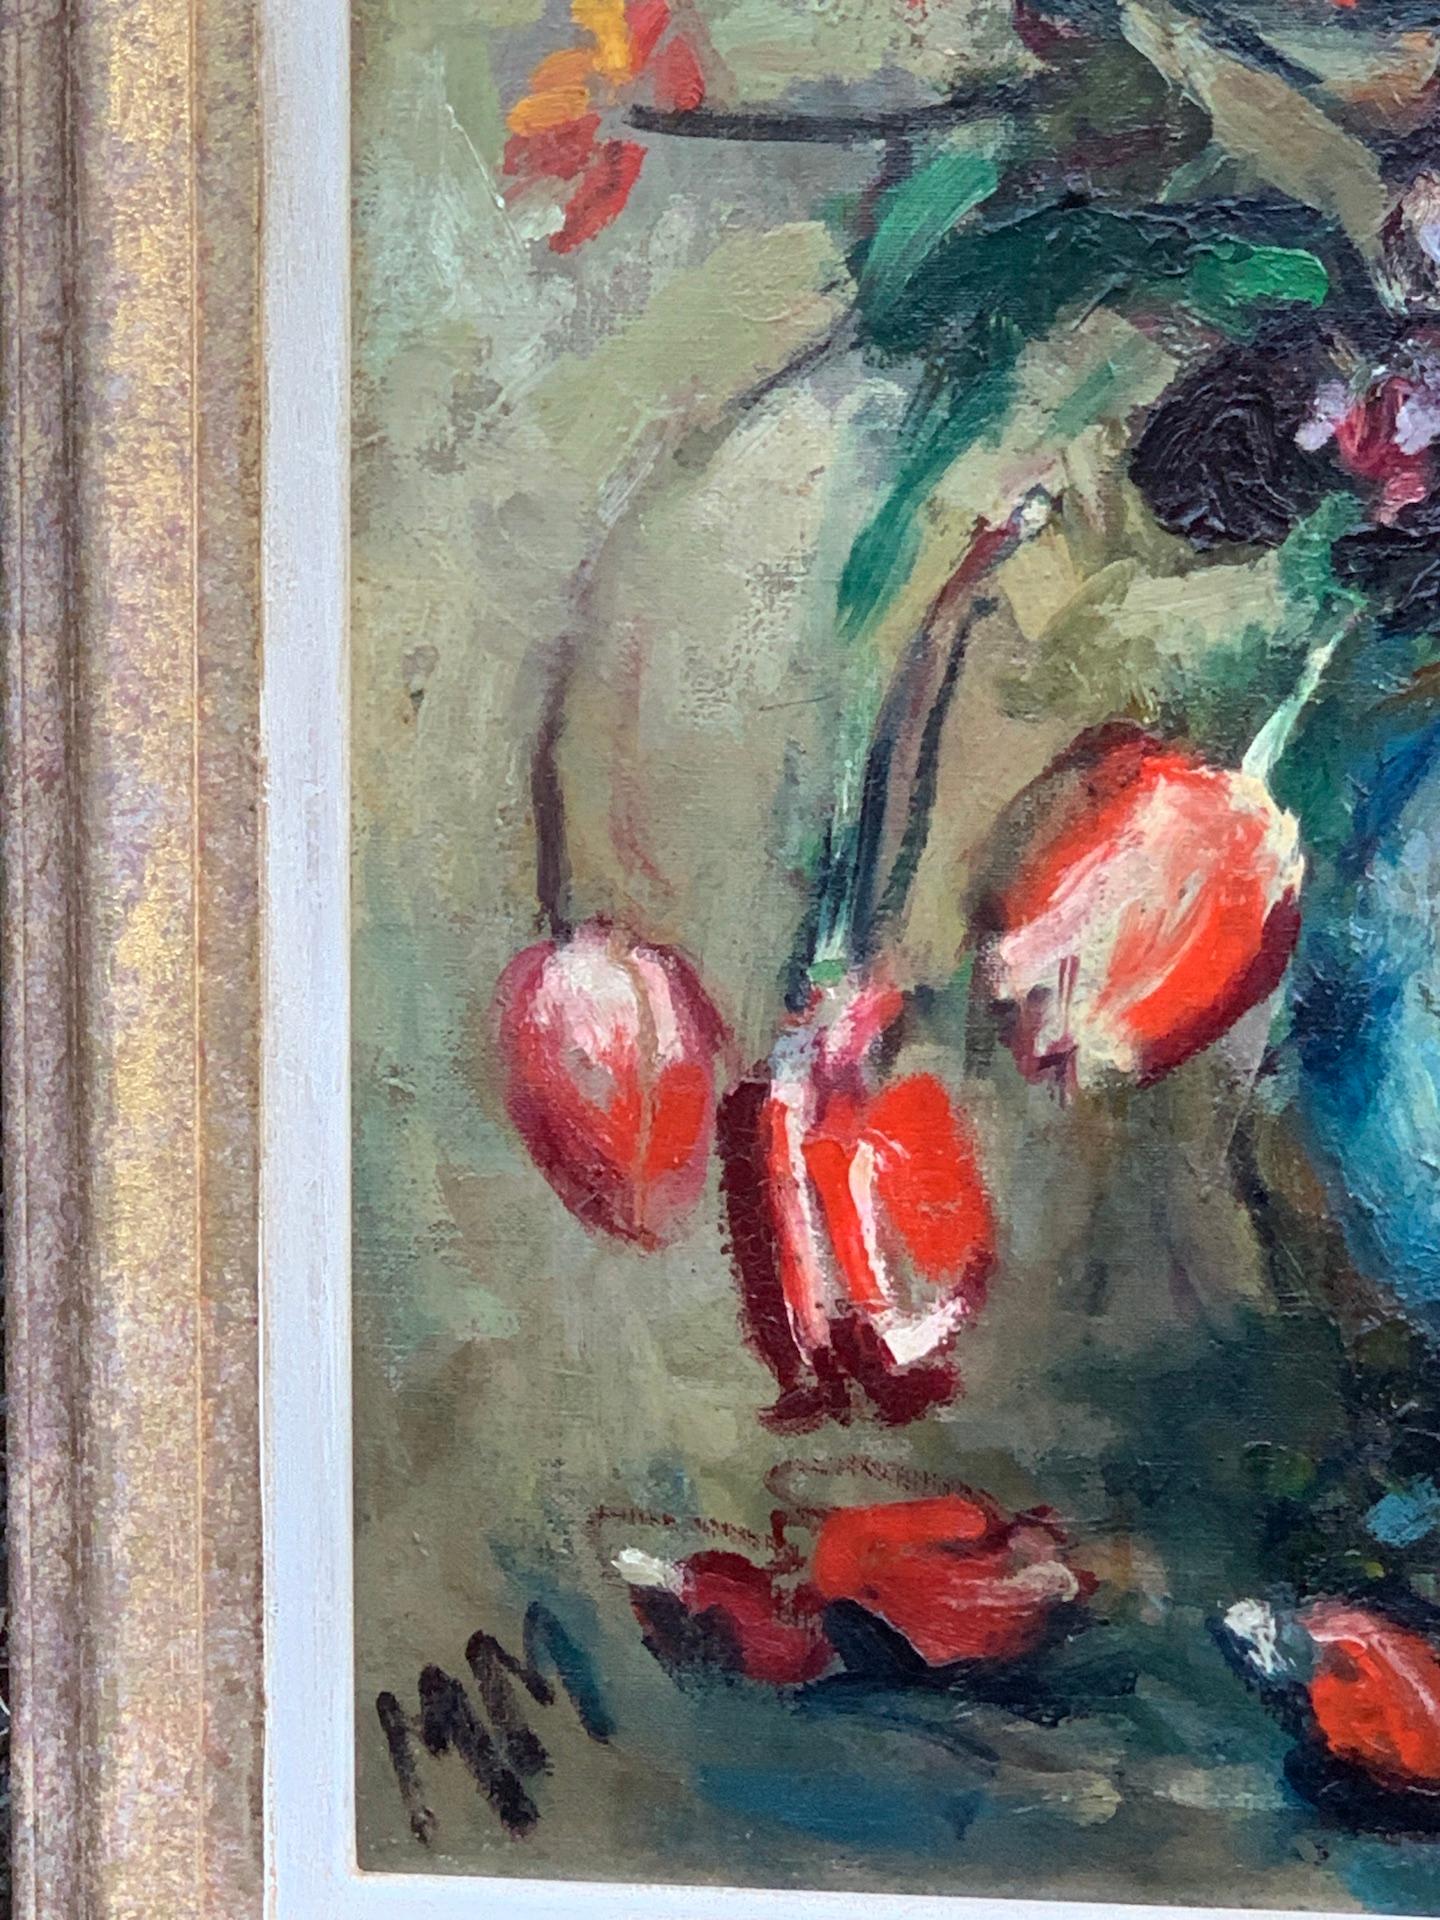 Englisches Stillleben aus den 1930er Jahren mit Tulpen und anderen roten Blumen in einer Vase  (Impressionismus), Painting, von M.Mathers